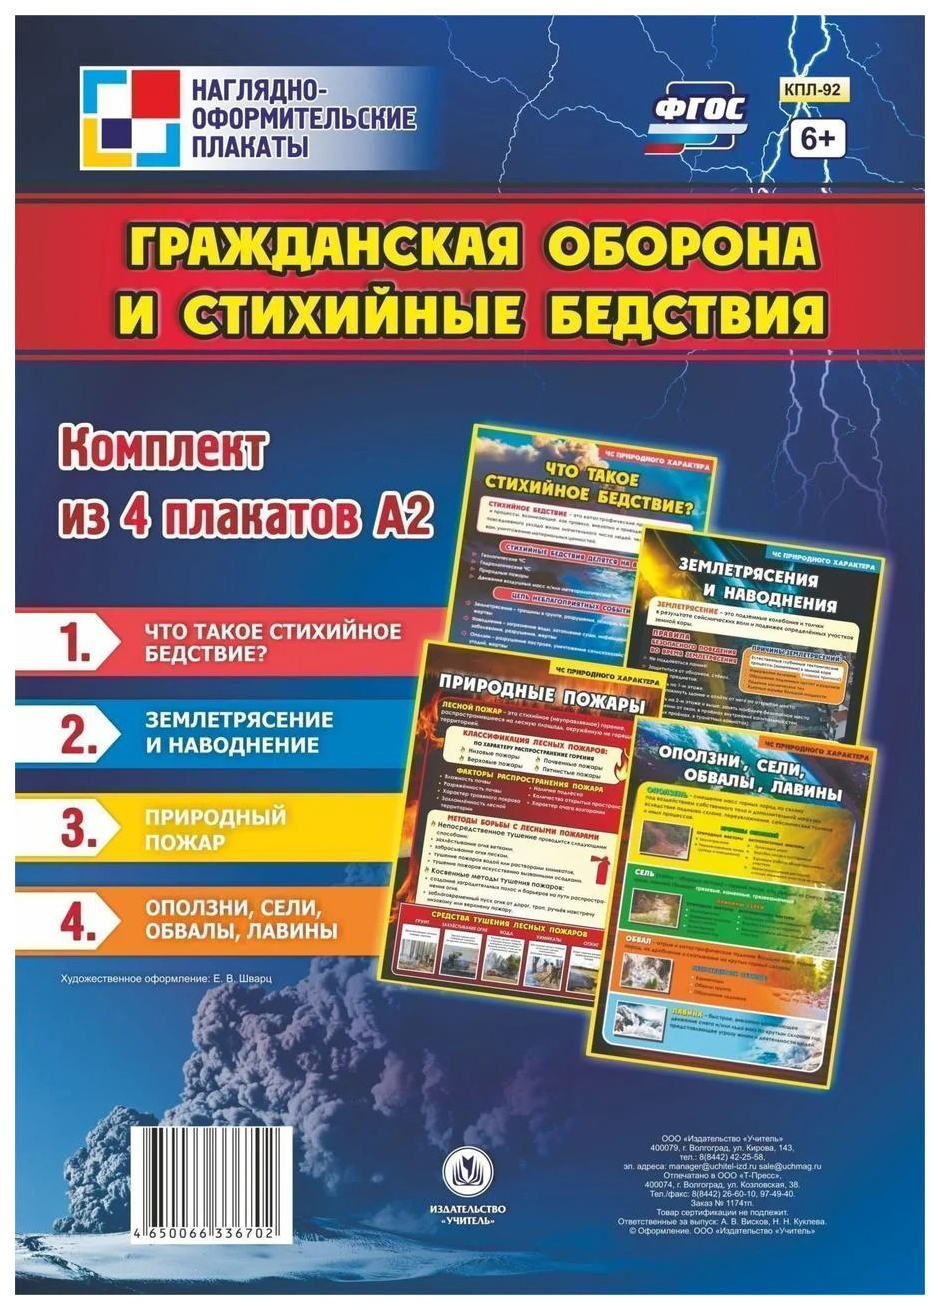 фото Комплект плакатов "гражданская оборона и стихийные бедствия": 4 плаката учитель